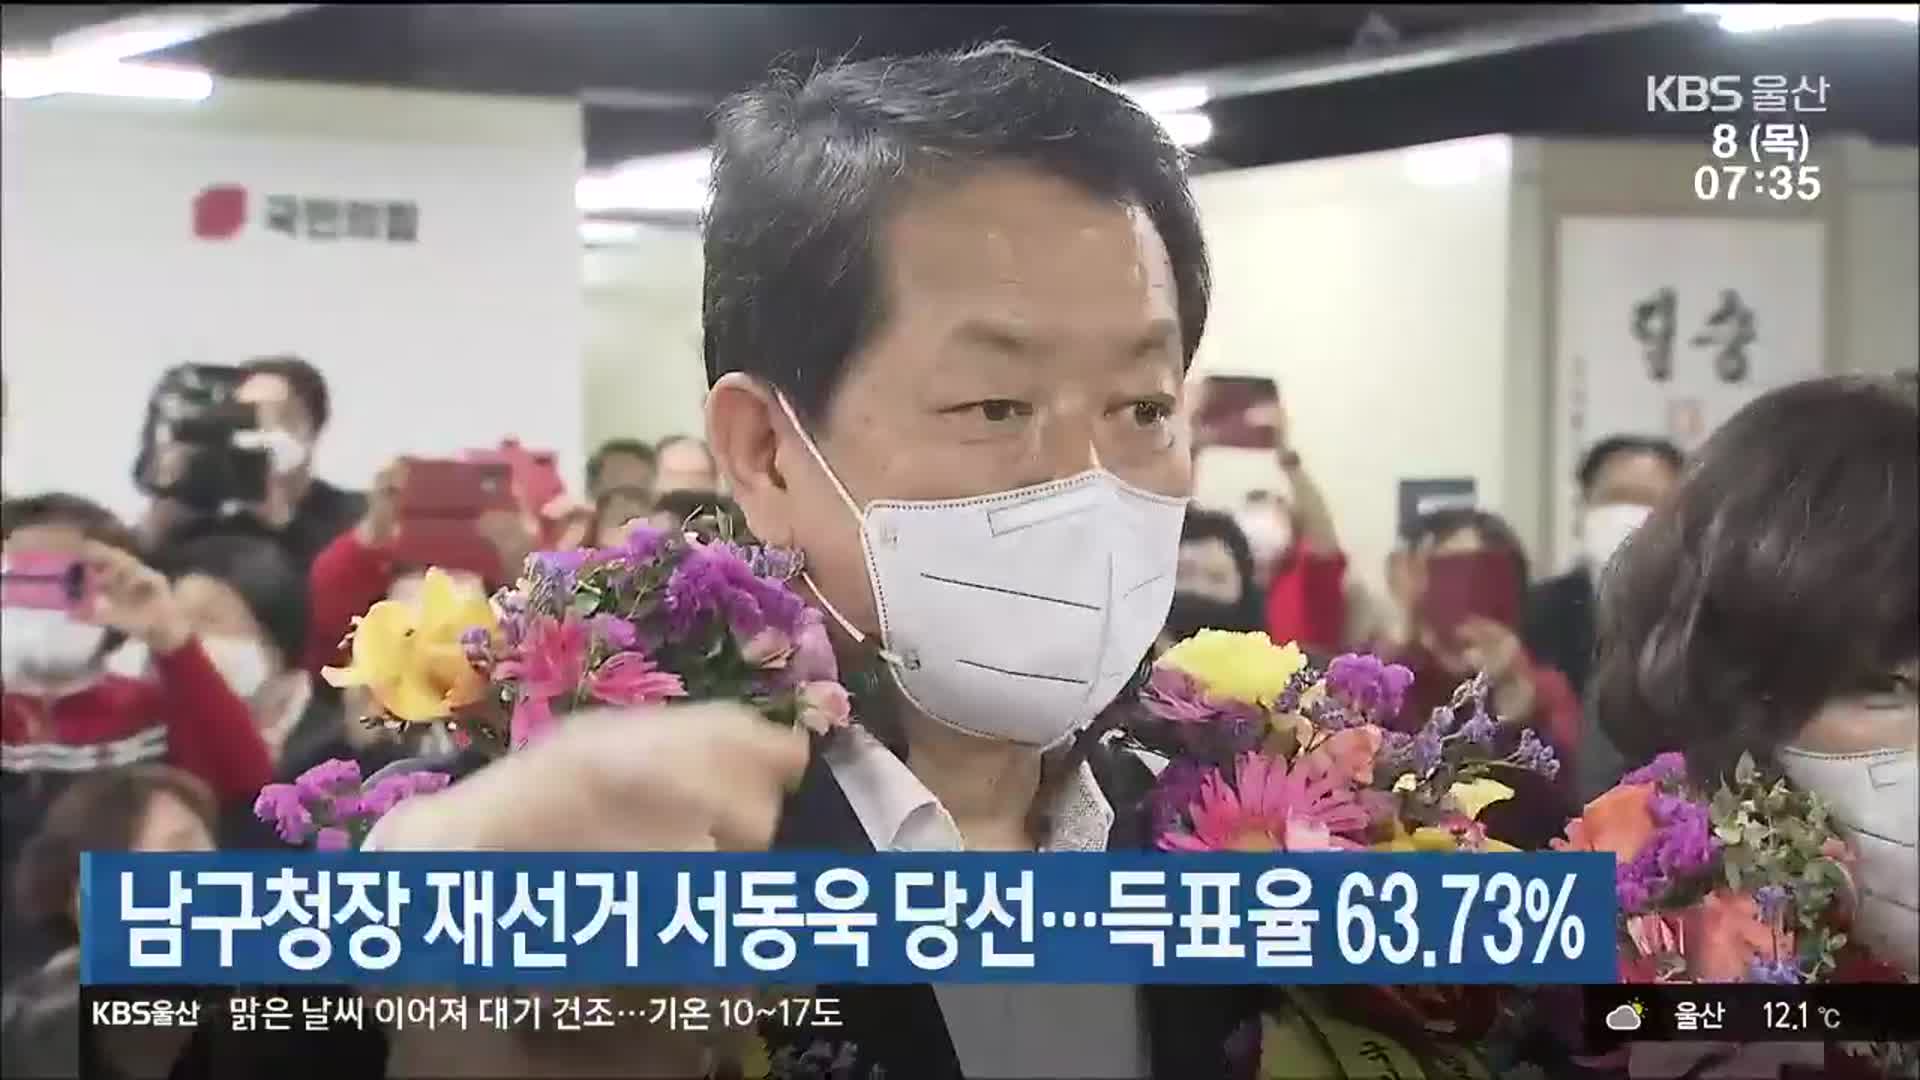 울산 남구청장 재선거 서동욱 당선…득표율 63.73%